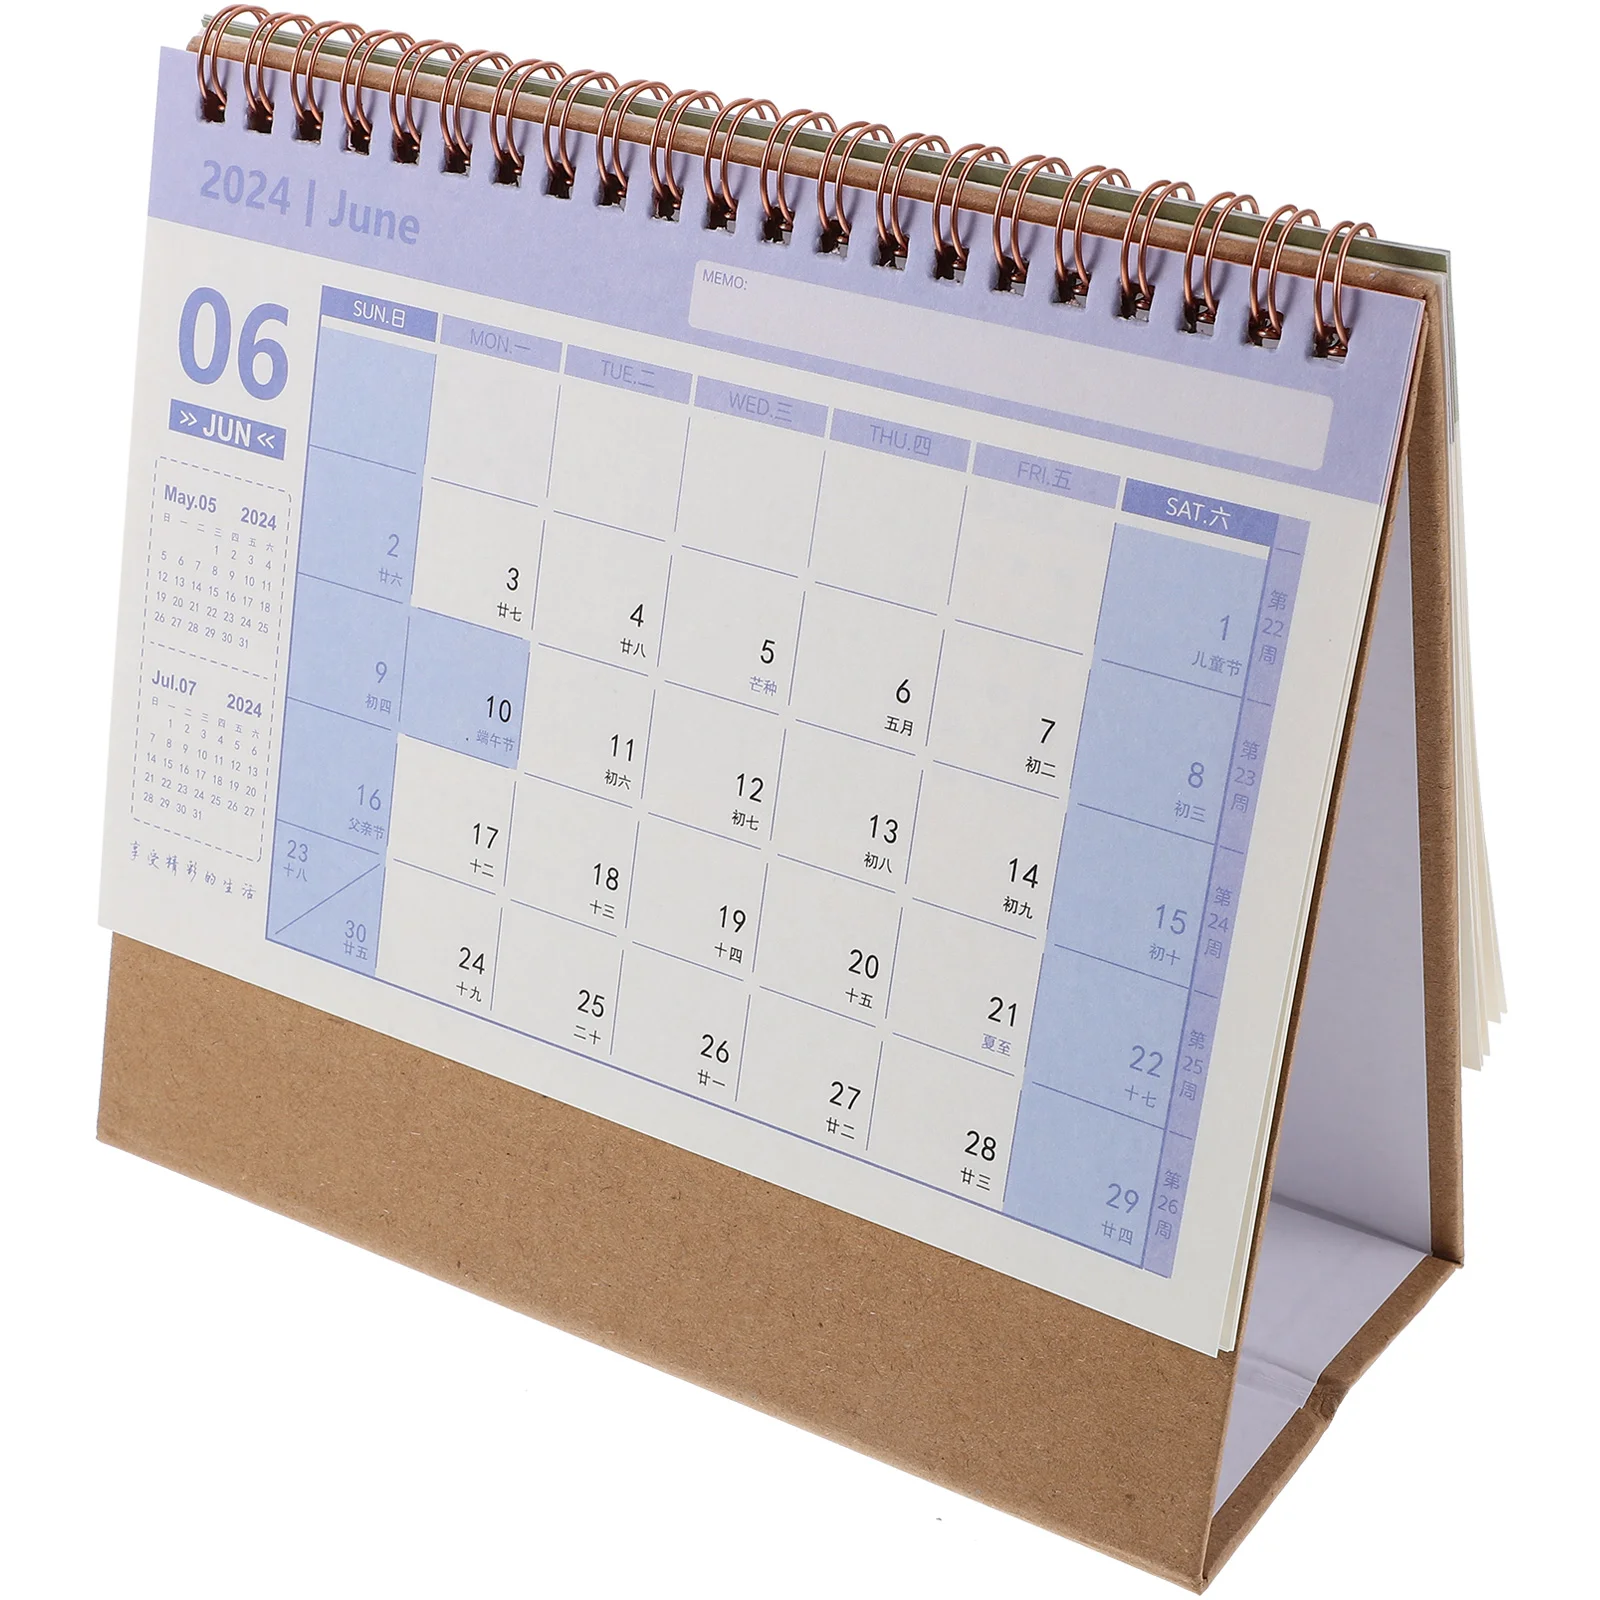 

2024 Desk Calendar Tent Office Desktop Small Standing Flip Decorate Calendars Paper